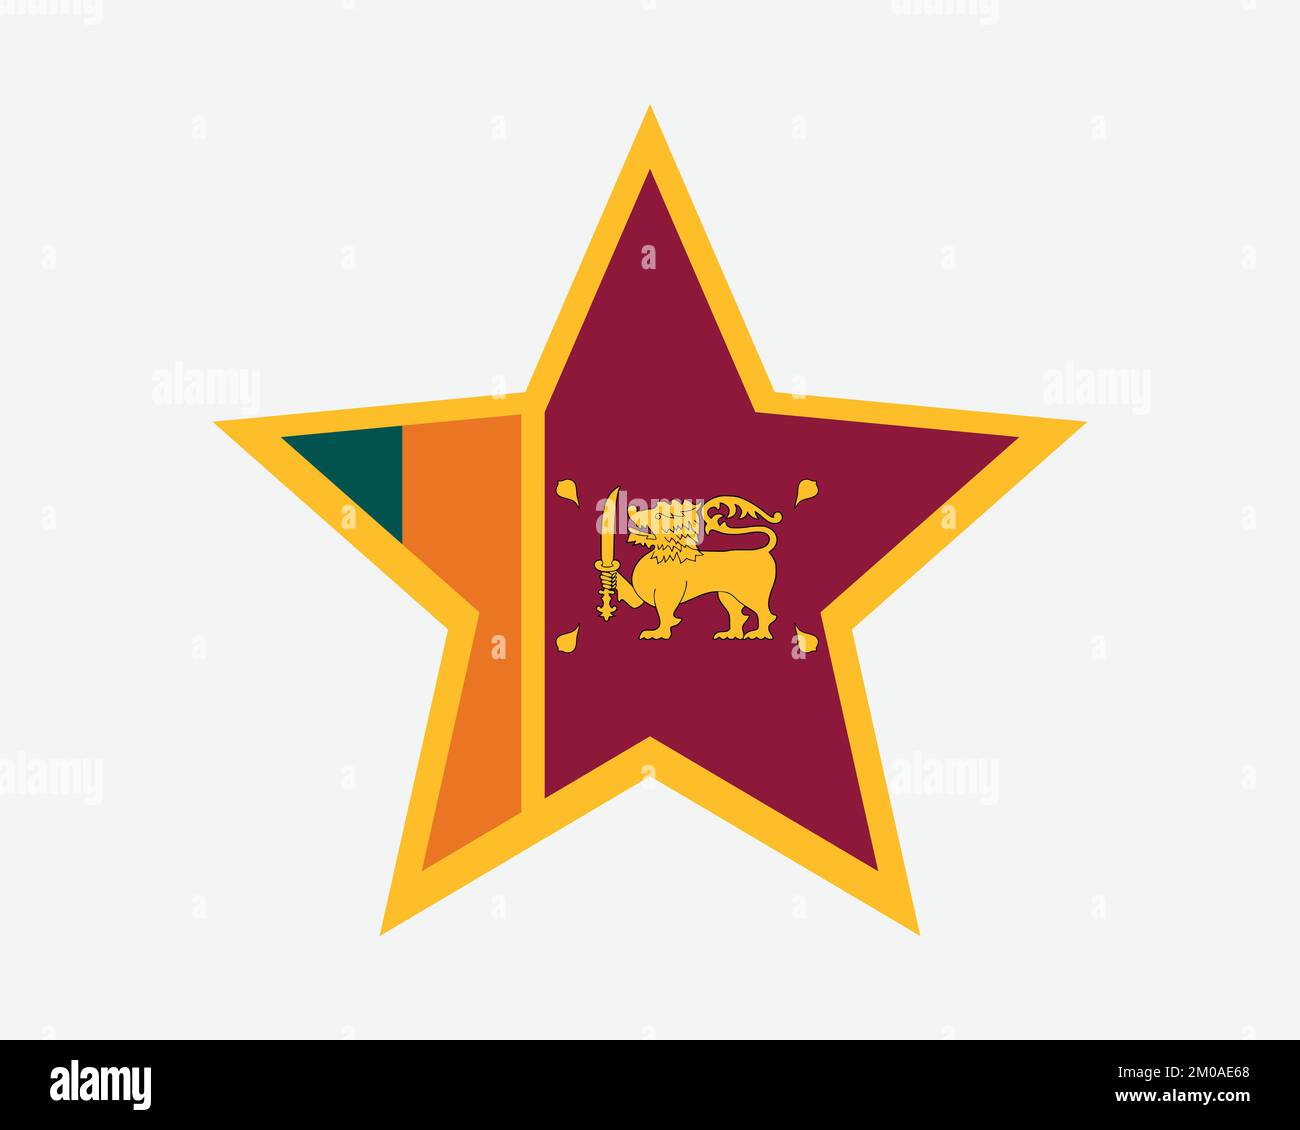 Sri Lanka Star Flag. Sri Lankan Star Shape Flag. Ceylon Country National Banner Icon Symbol Vector Flat Artwork Graphic Illustration Stock Vector